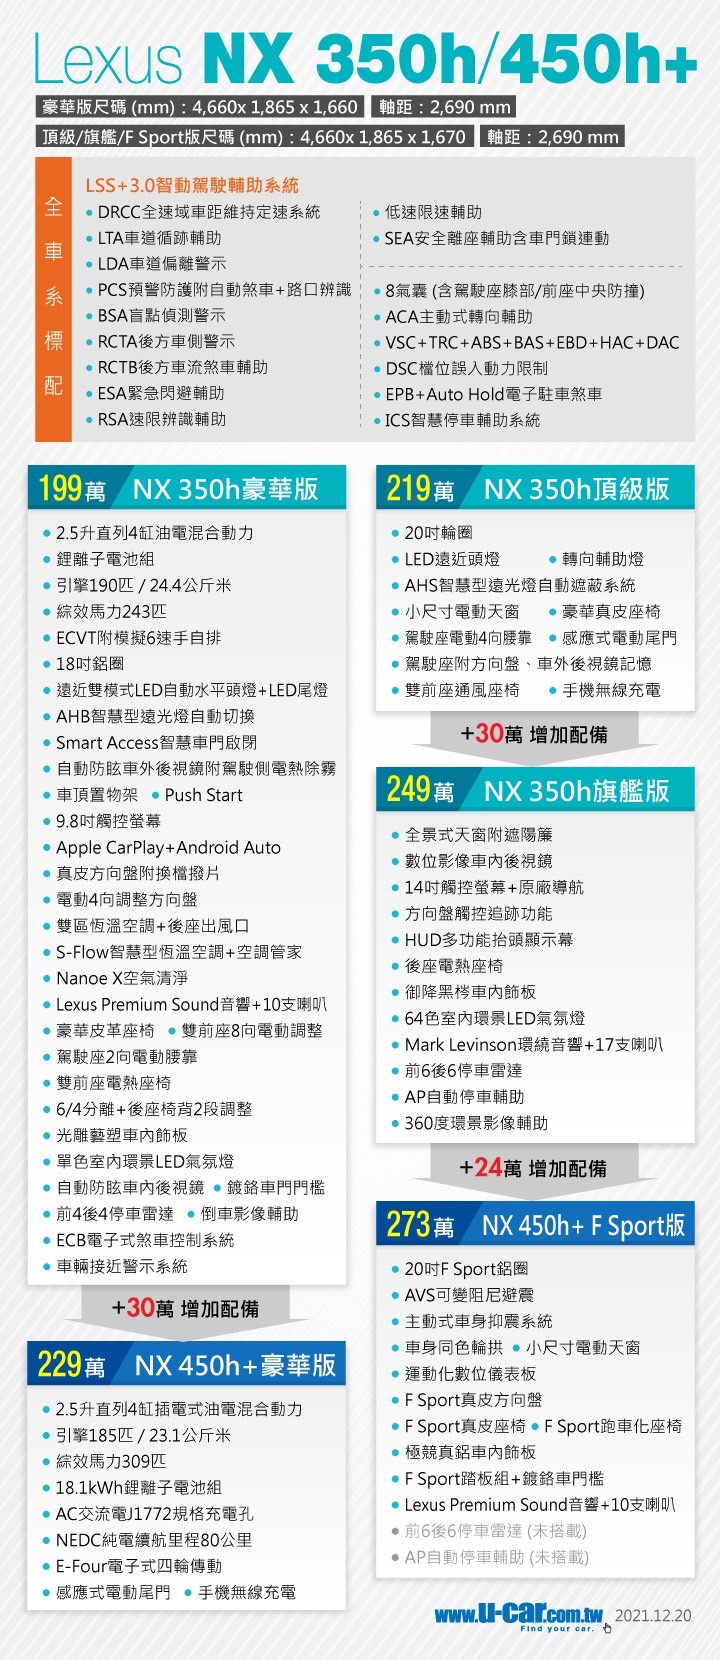 LEXUS,LEXUS NX200,NX200,NX200價格,NX200改車,NX200菜單,NX200規格,NX200開箱,NX250,NX350h,NX450h,新NX200